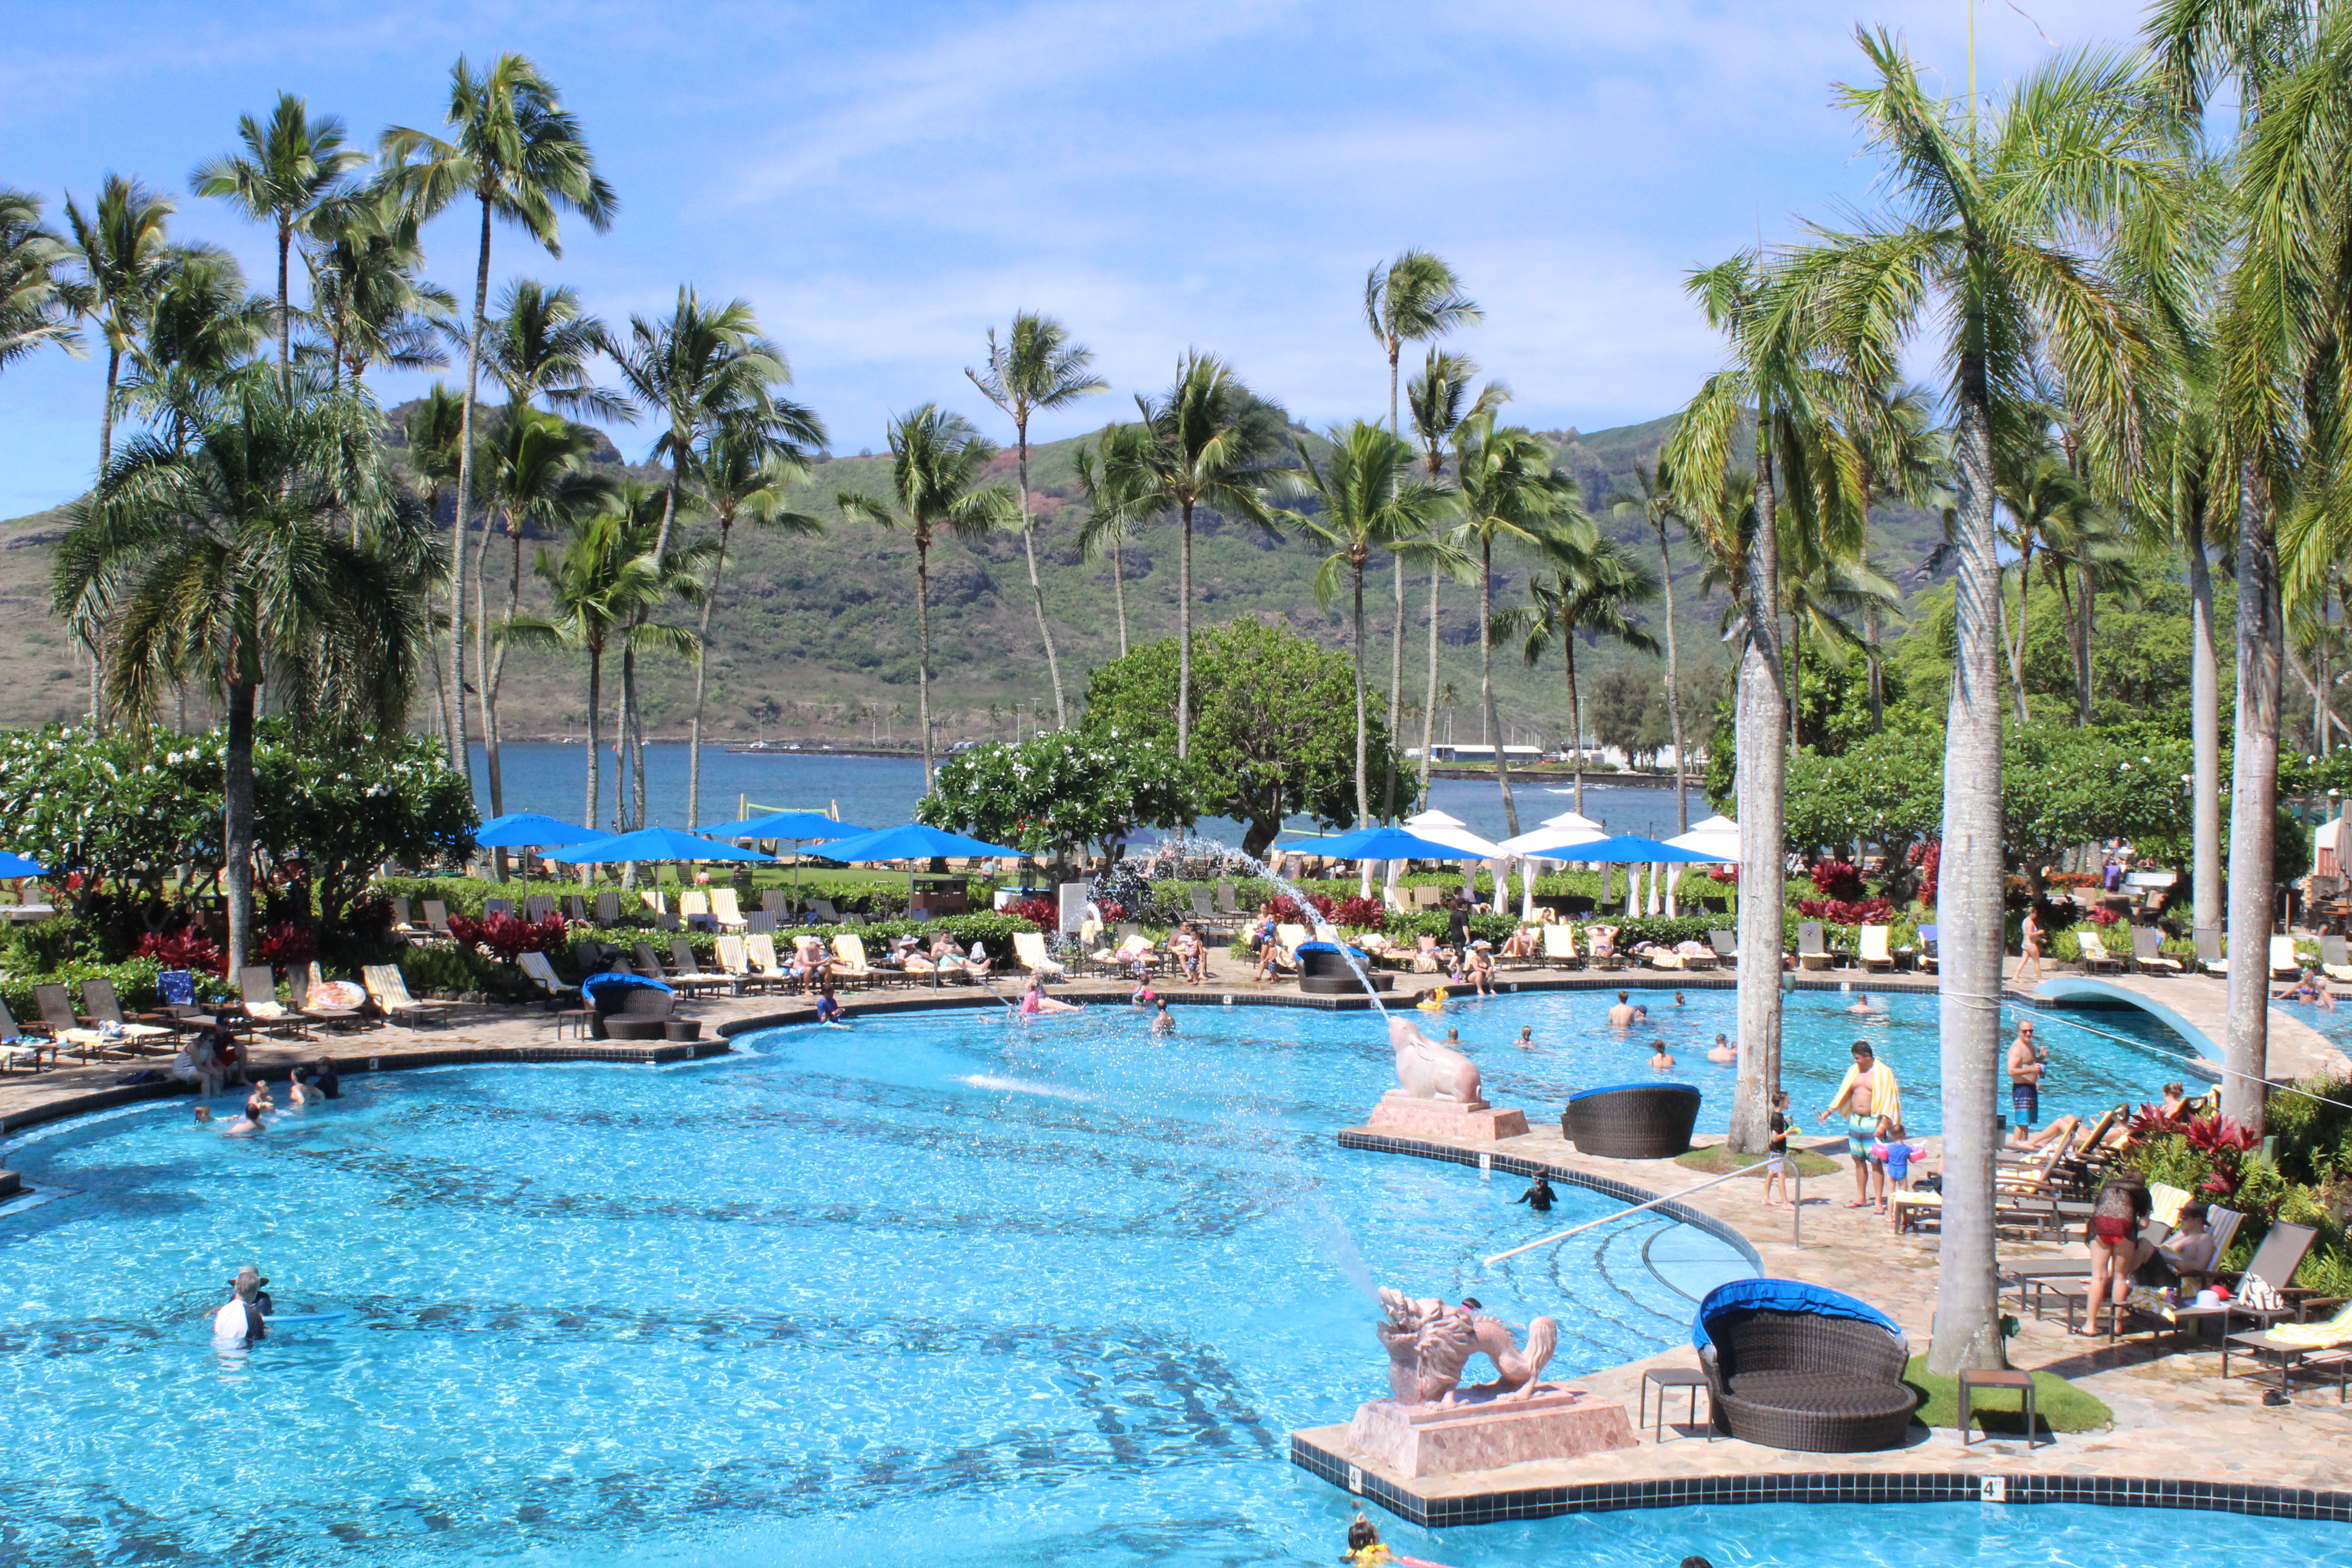 Marriot Resort and Spa, Lihue, Kauai